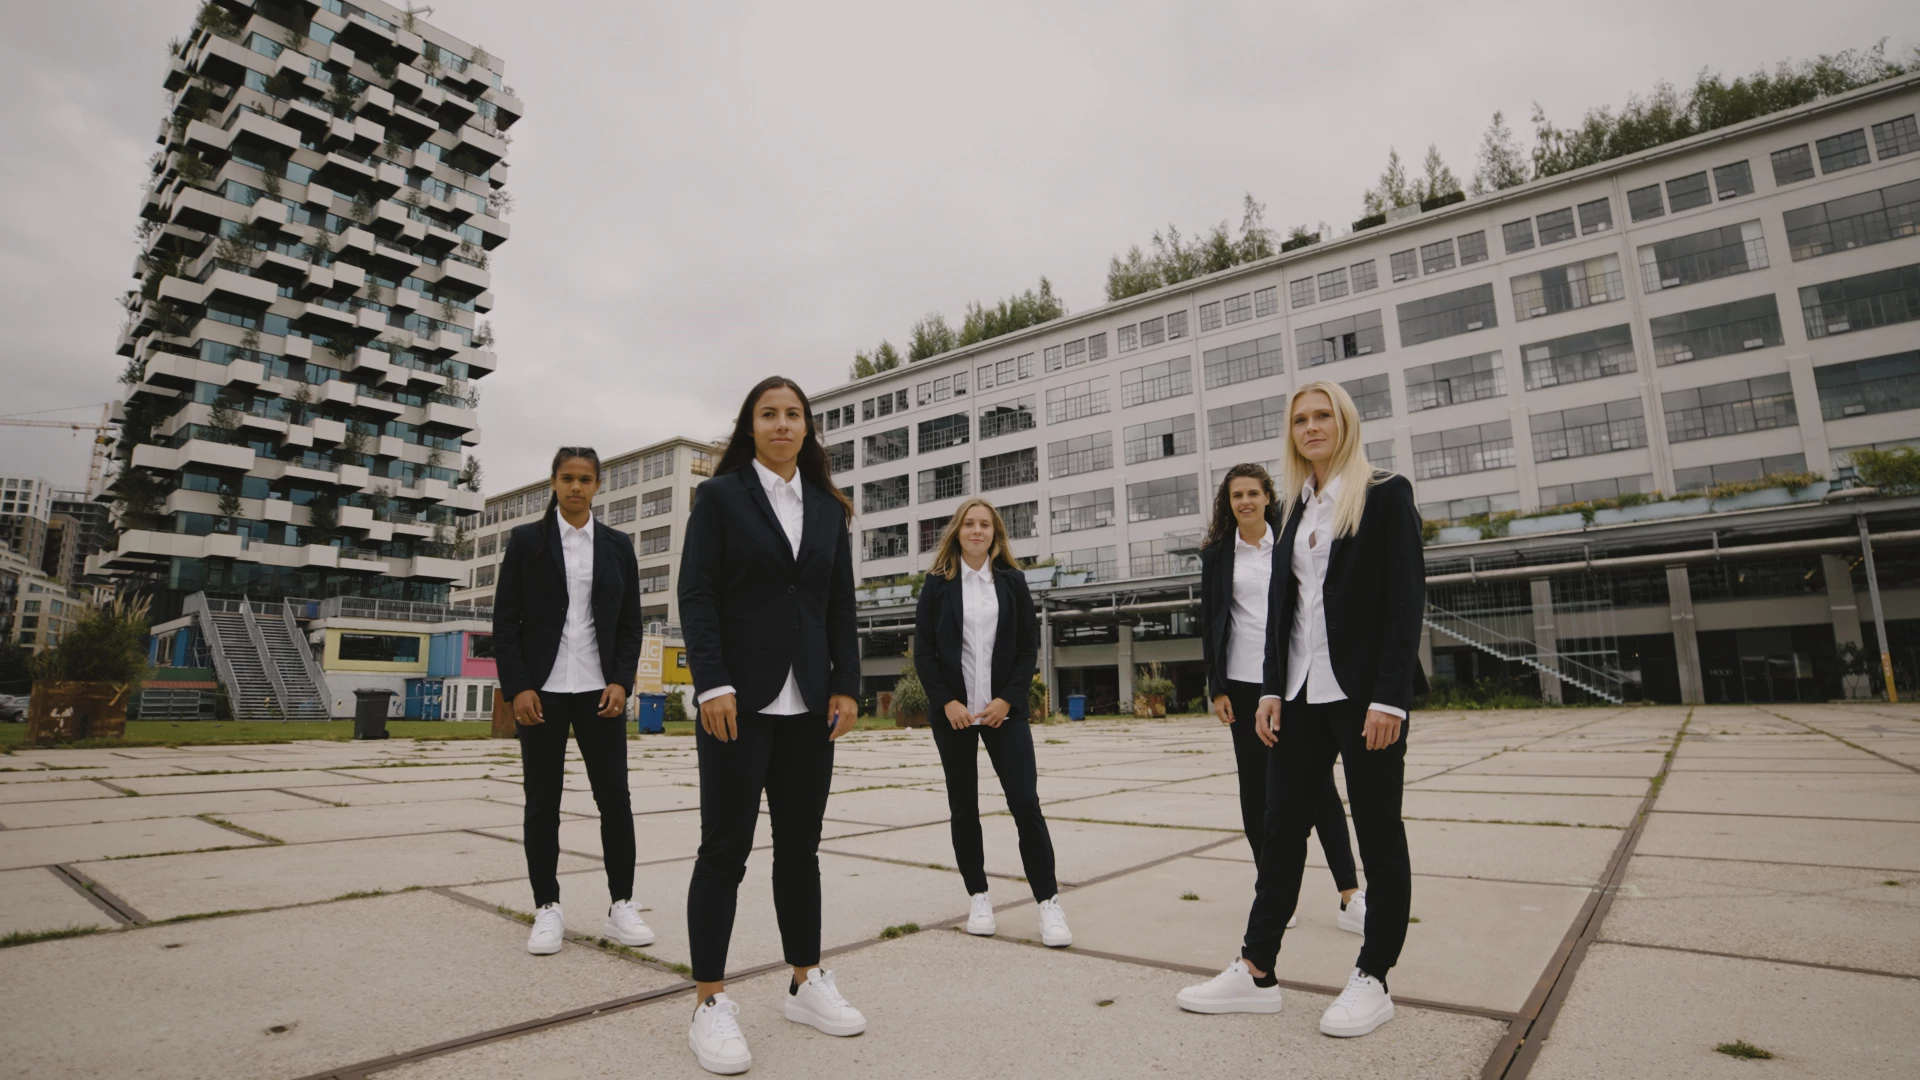 PSV dames team gekleed in kleding van Expresso op een achtergrond van gebouwen en flats